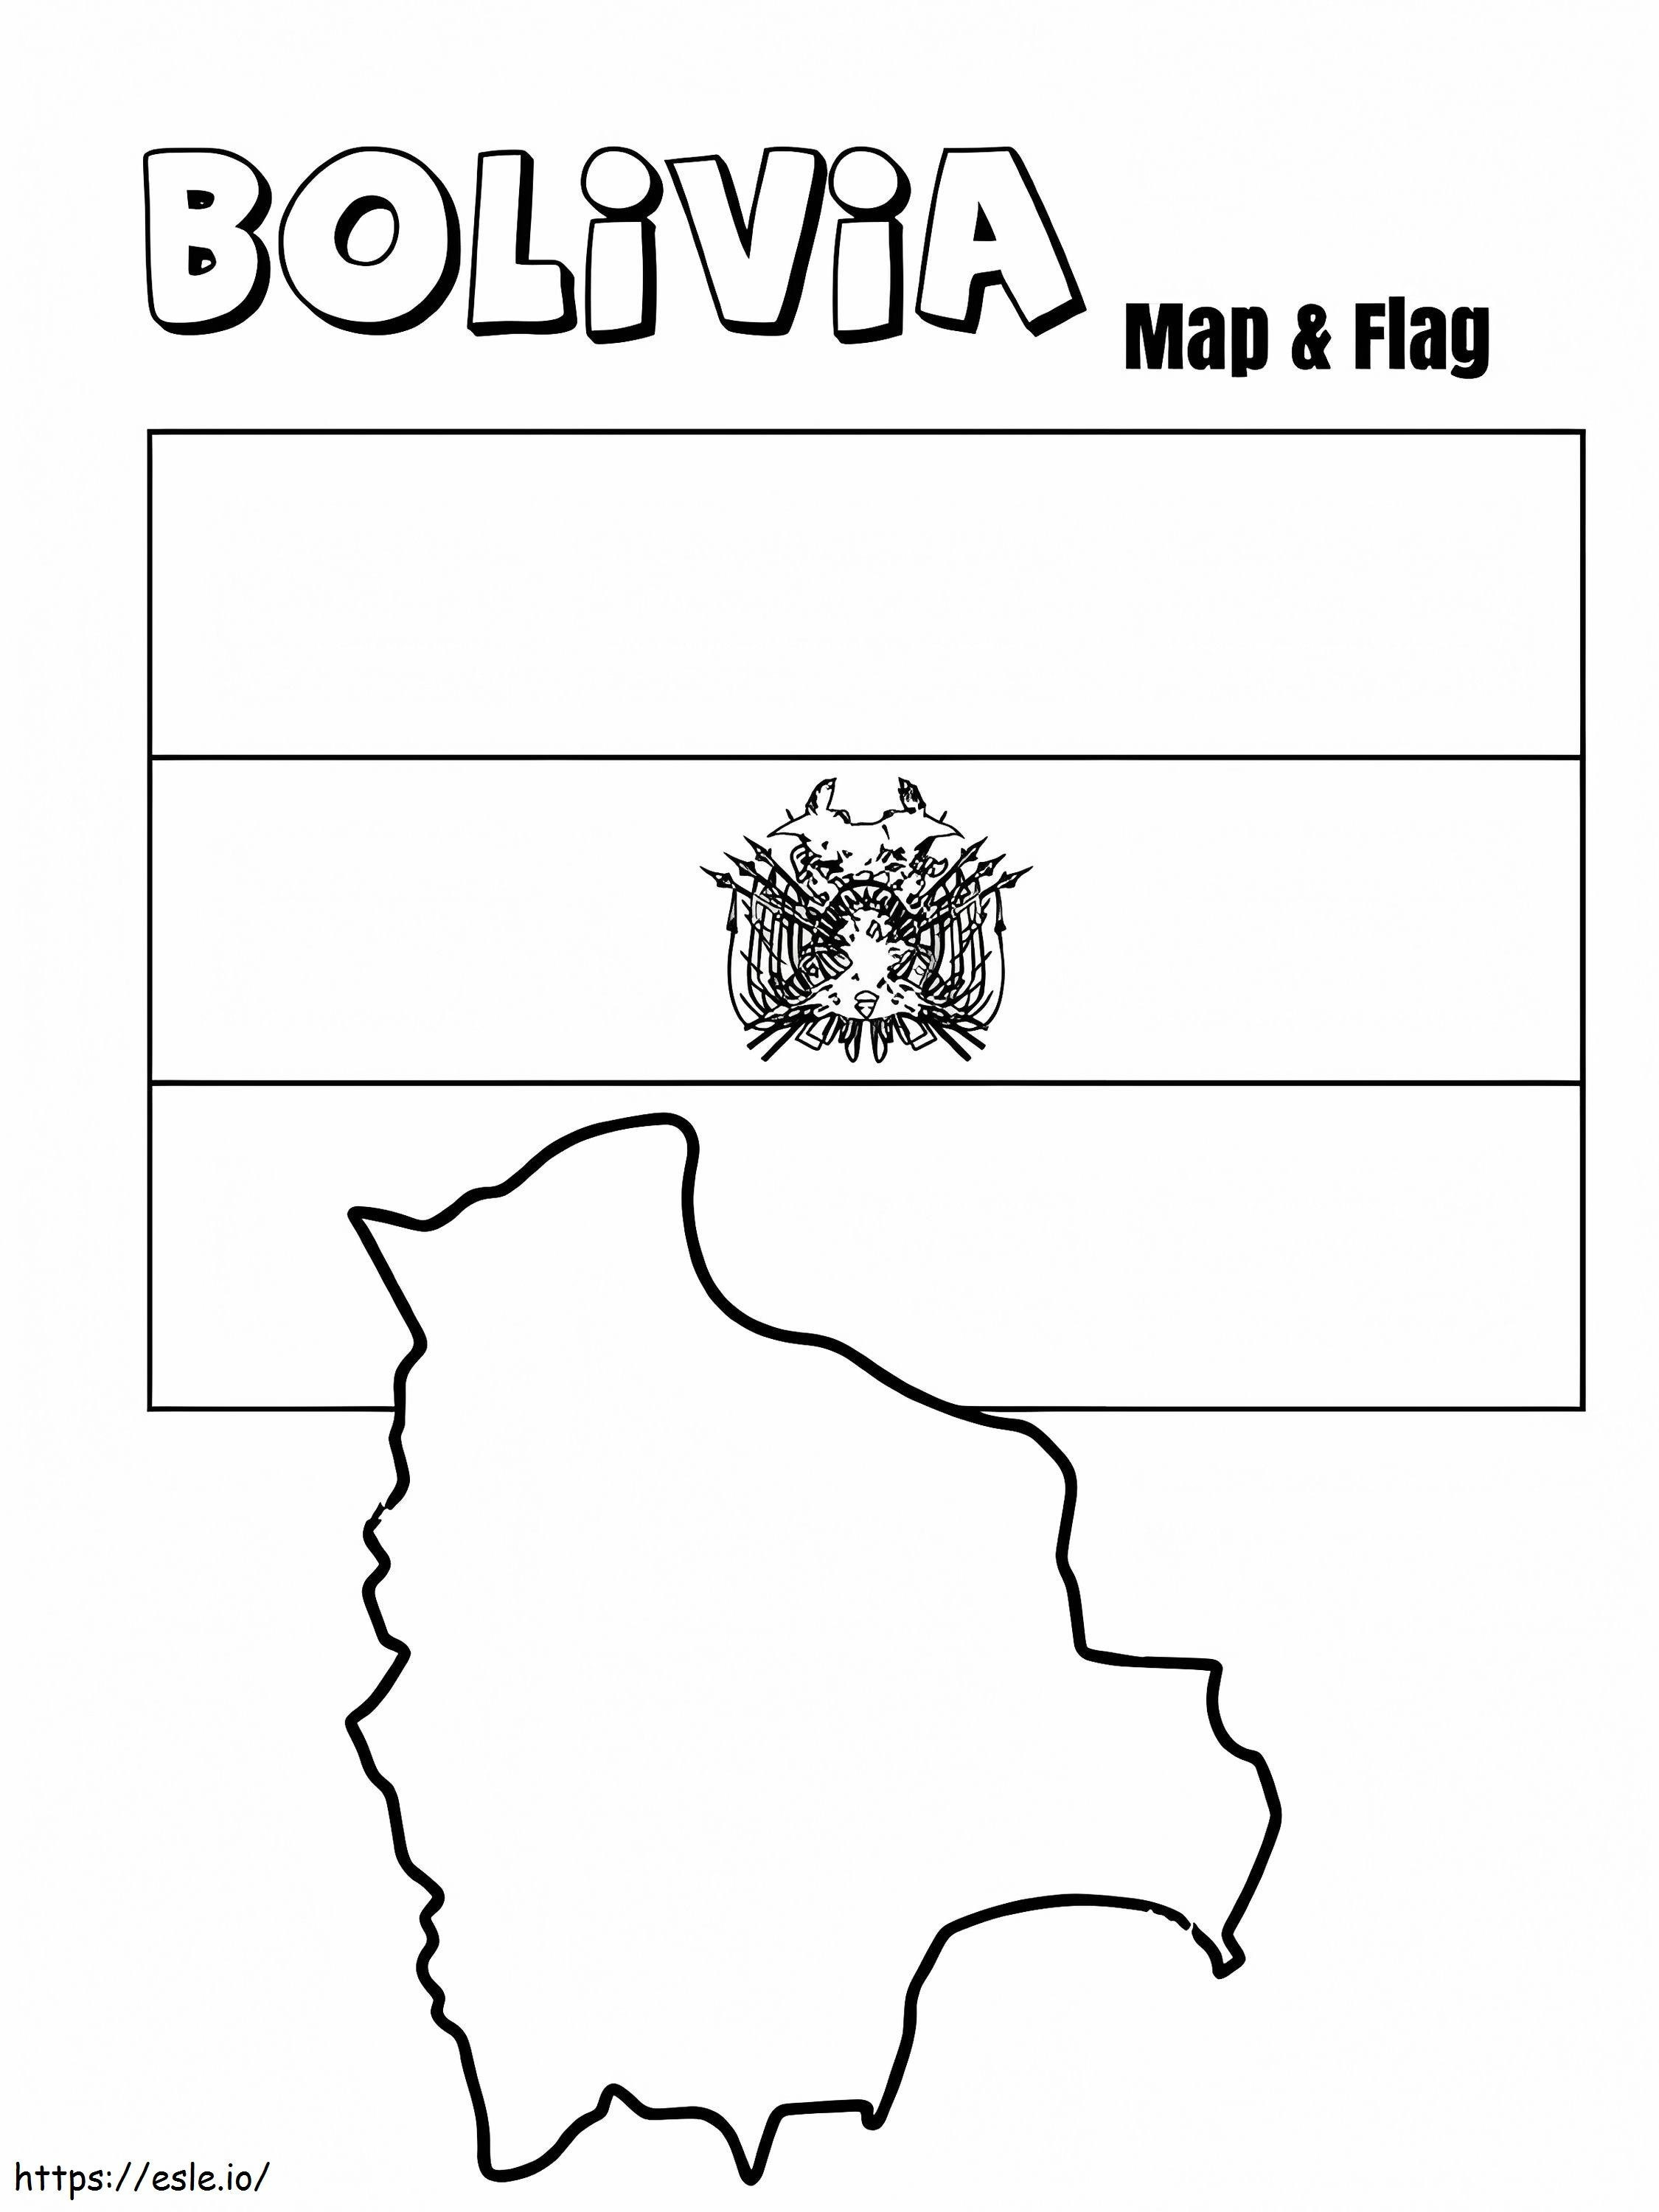 Bandiera e mappa della Bolivia da colorare